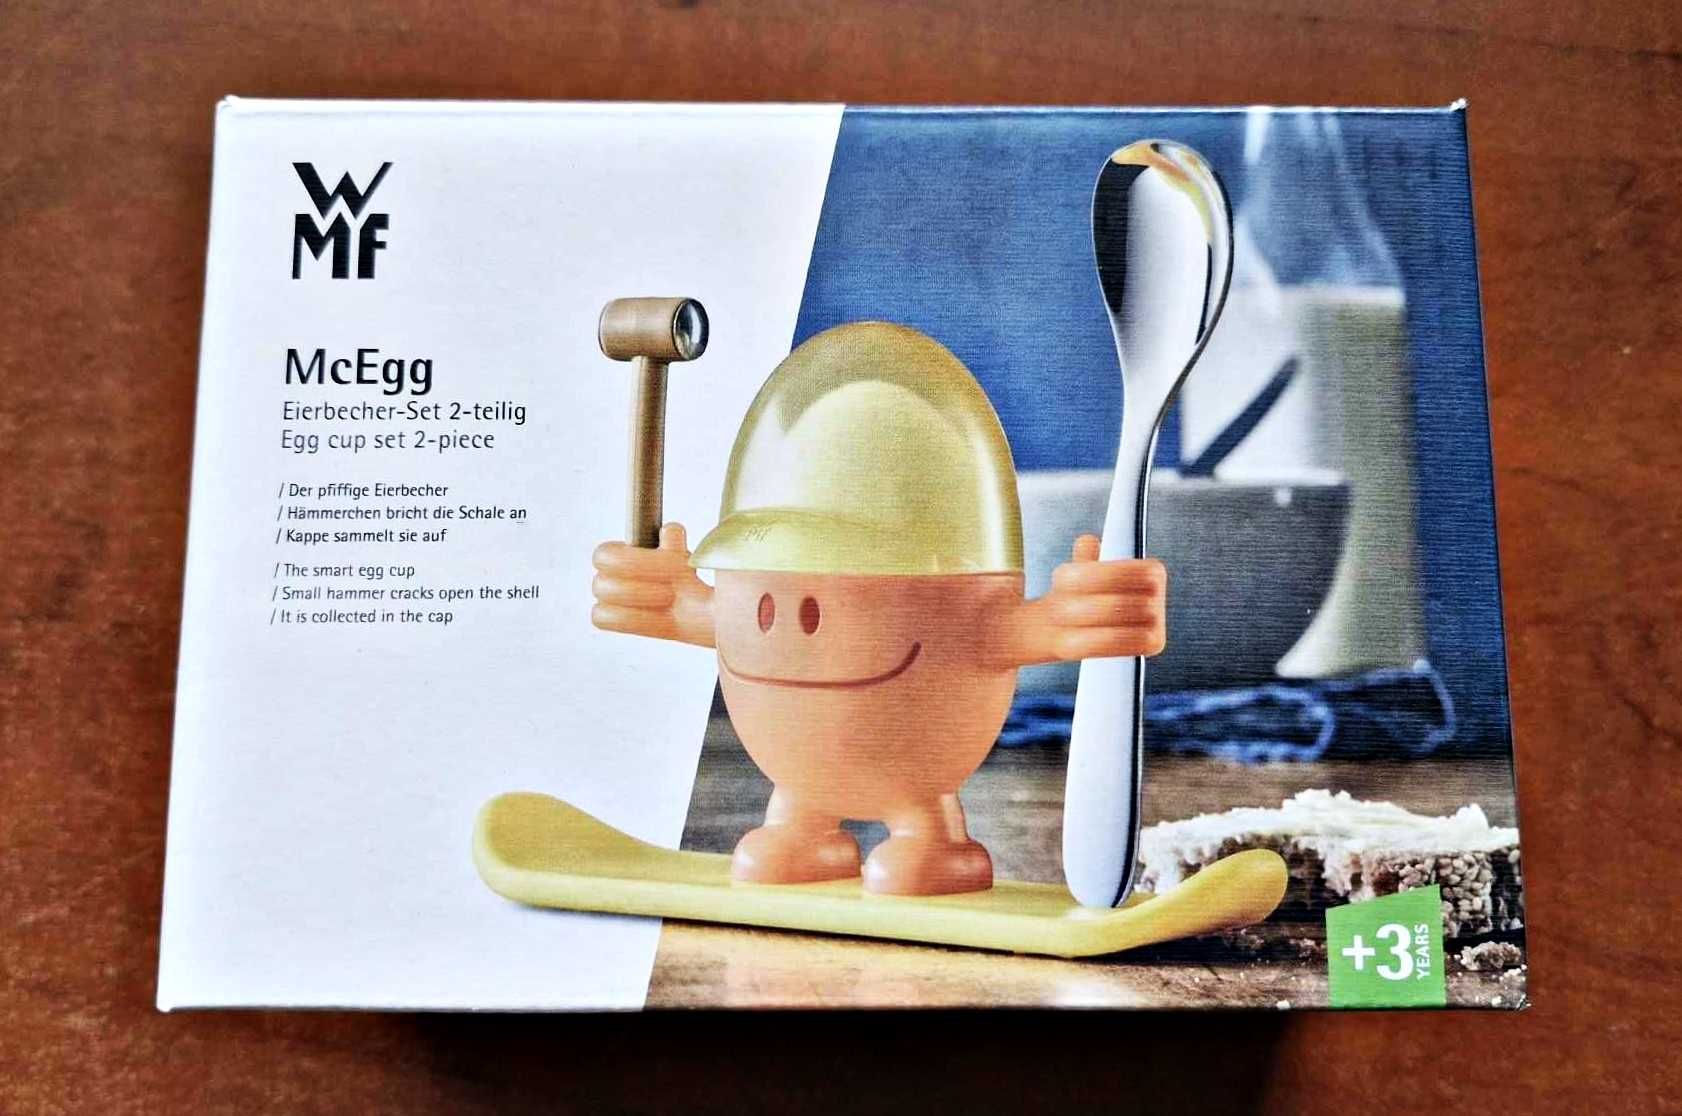 Podstawka na jajko z łyżeczką McEgg firmy WMF